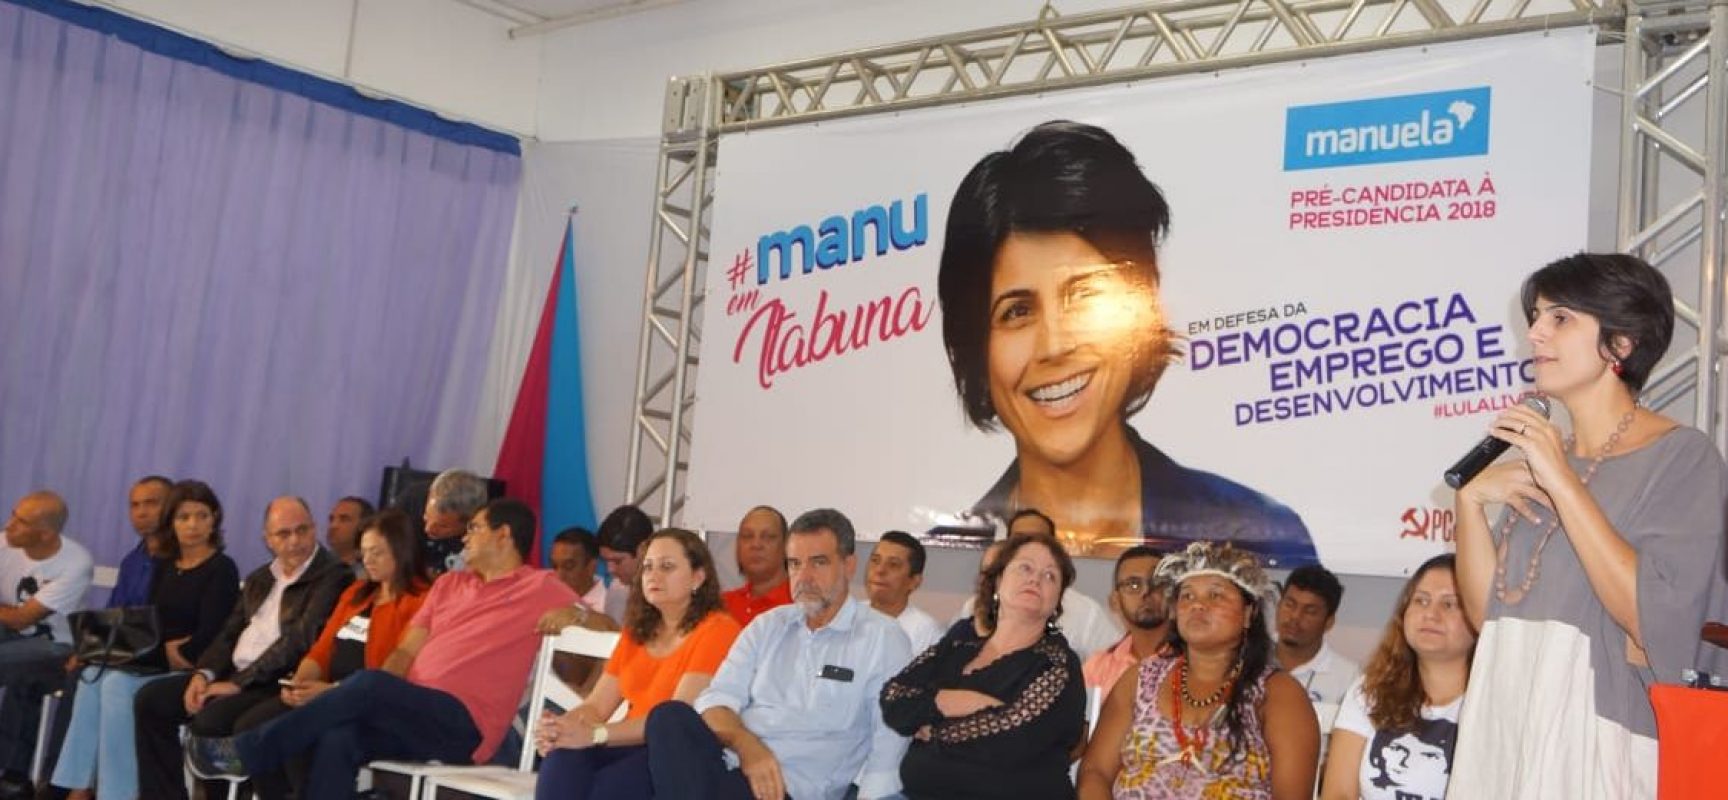 Encontro com Manuela D’Ávila reúne mais de mil pessoas em Itabuna